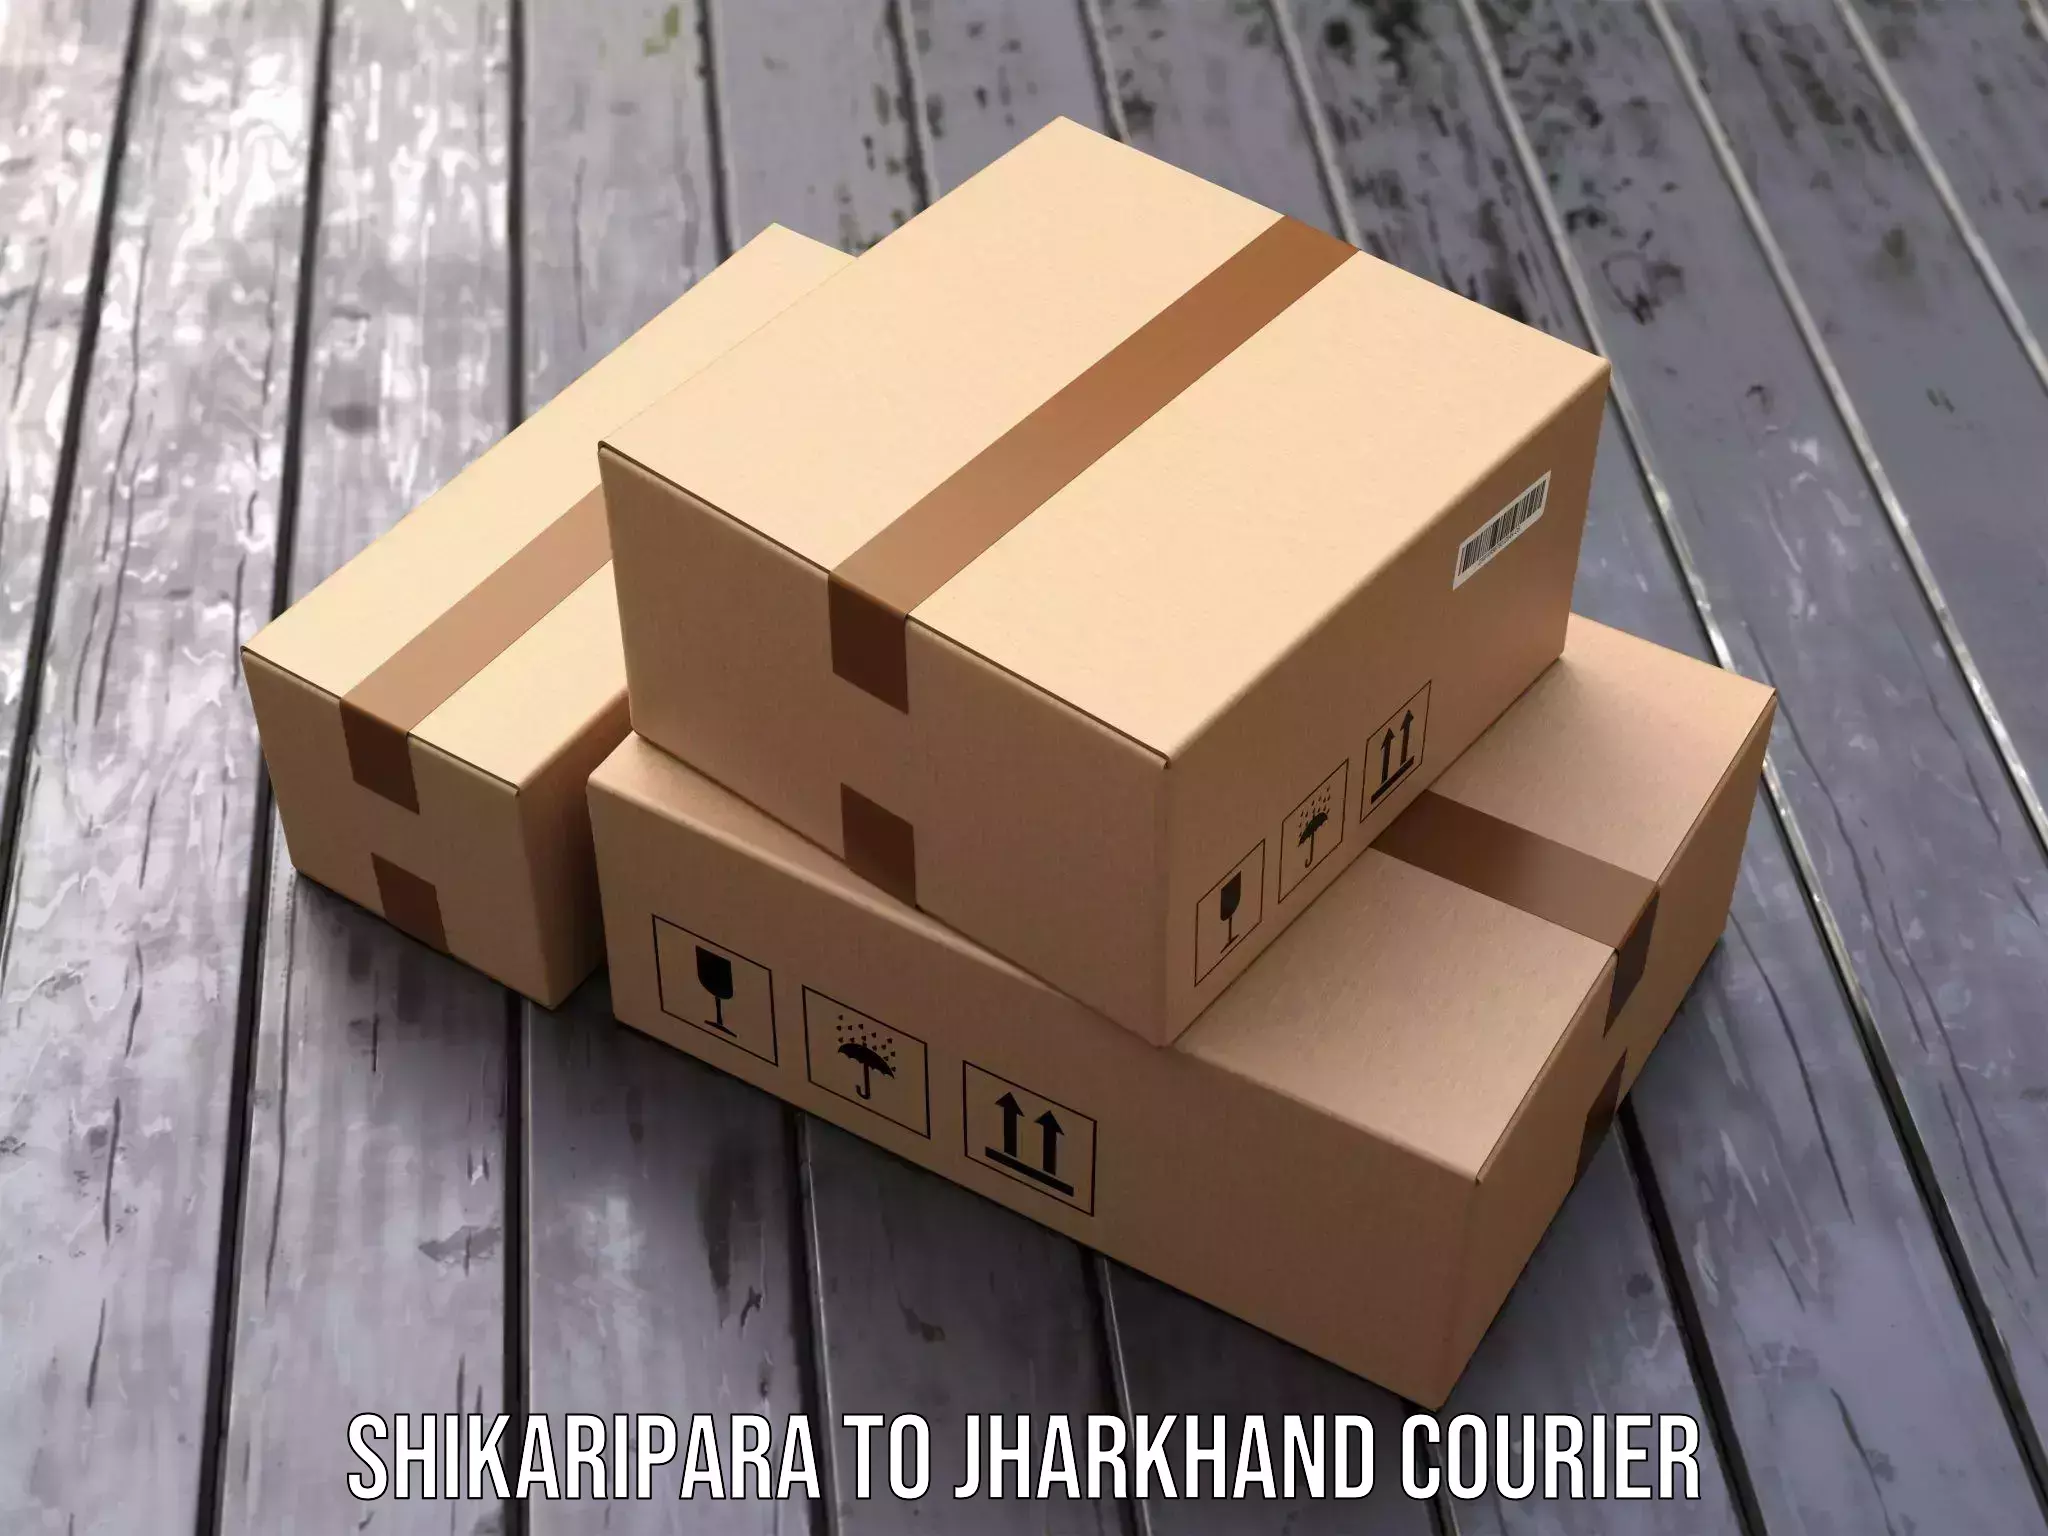 Professional parcel services Shikaripara to Sahibganj